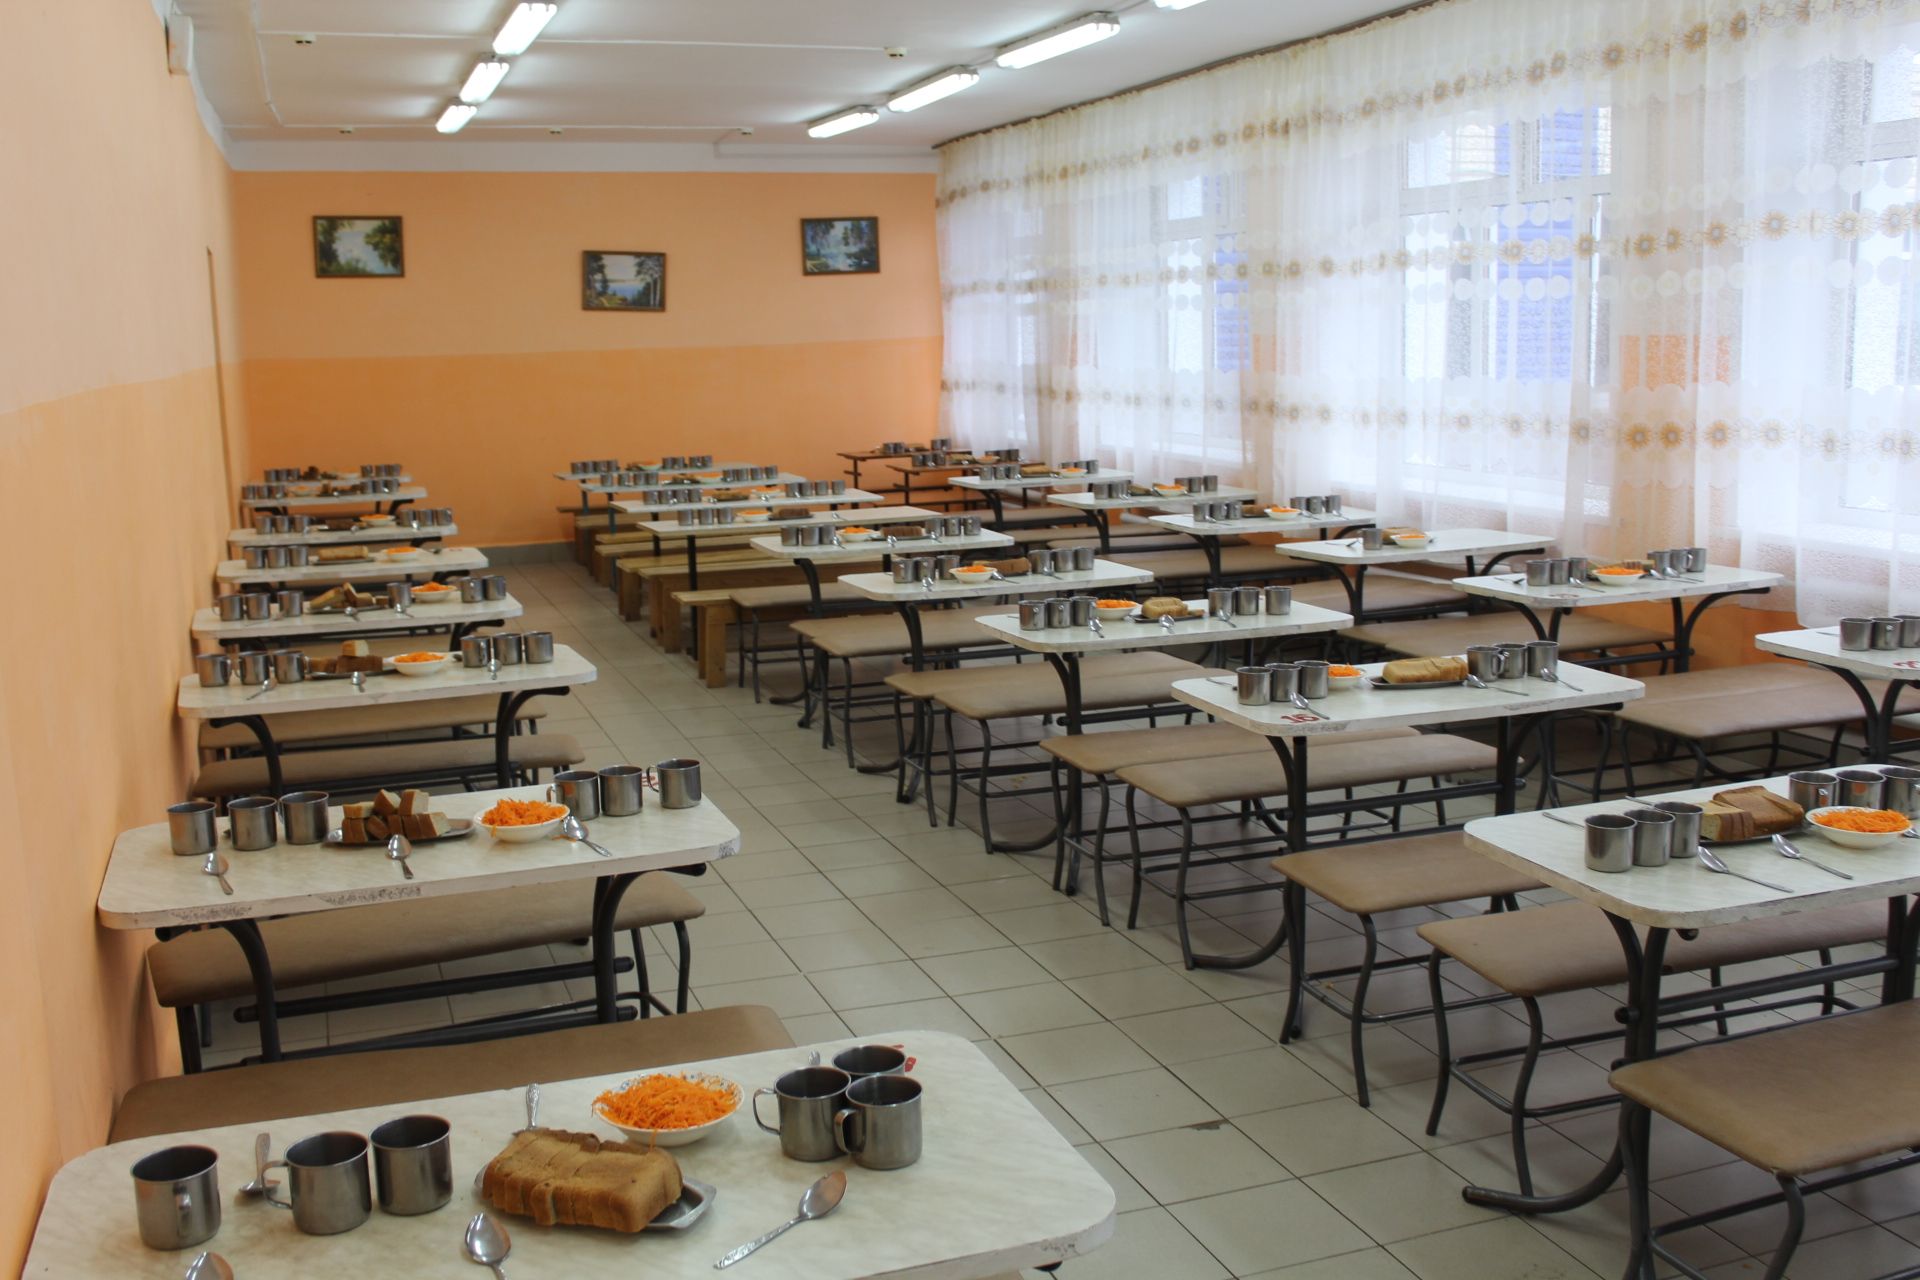 Фото: Сергей Димитриев провел выездное совещание по вопросам школьного питания